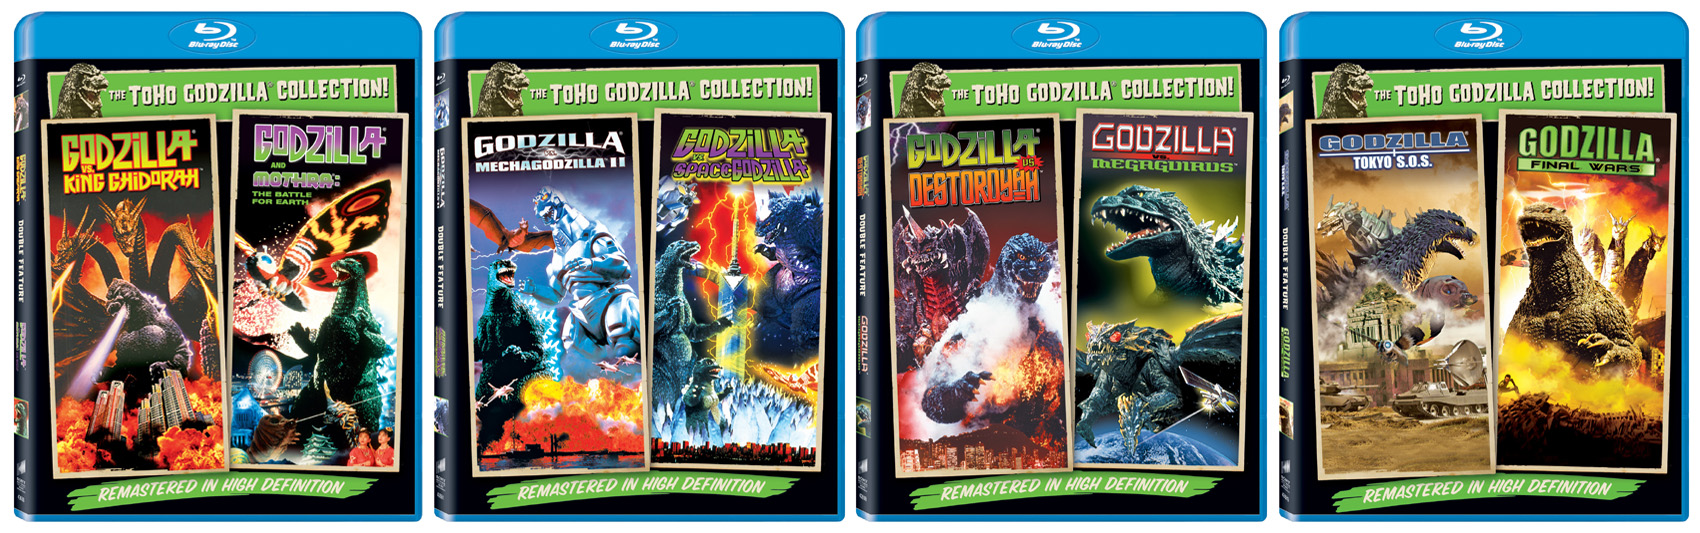 Toho-Godzilla-Collection-Blu-Rays.jpg